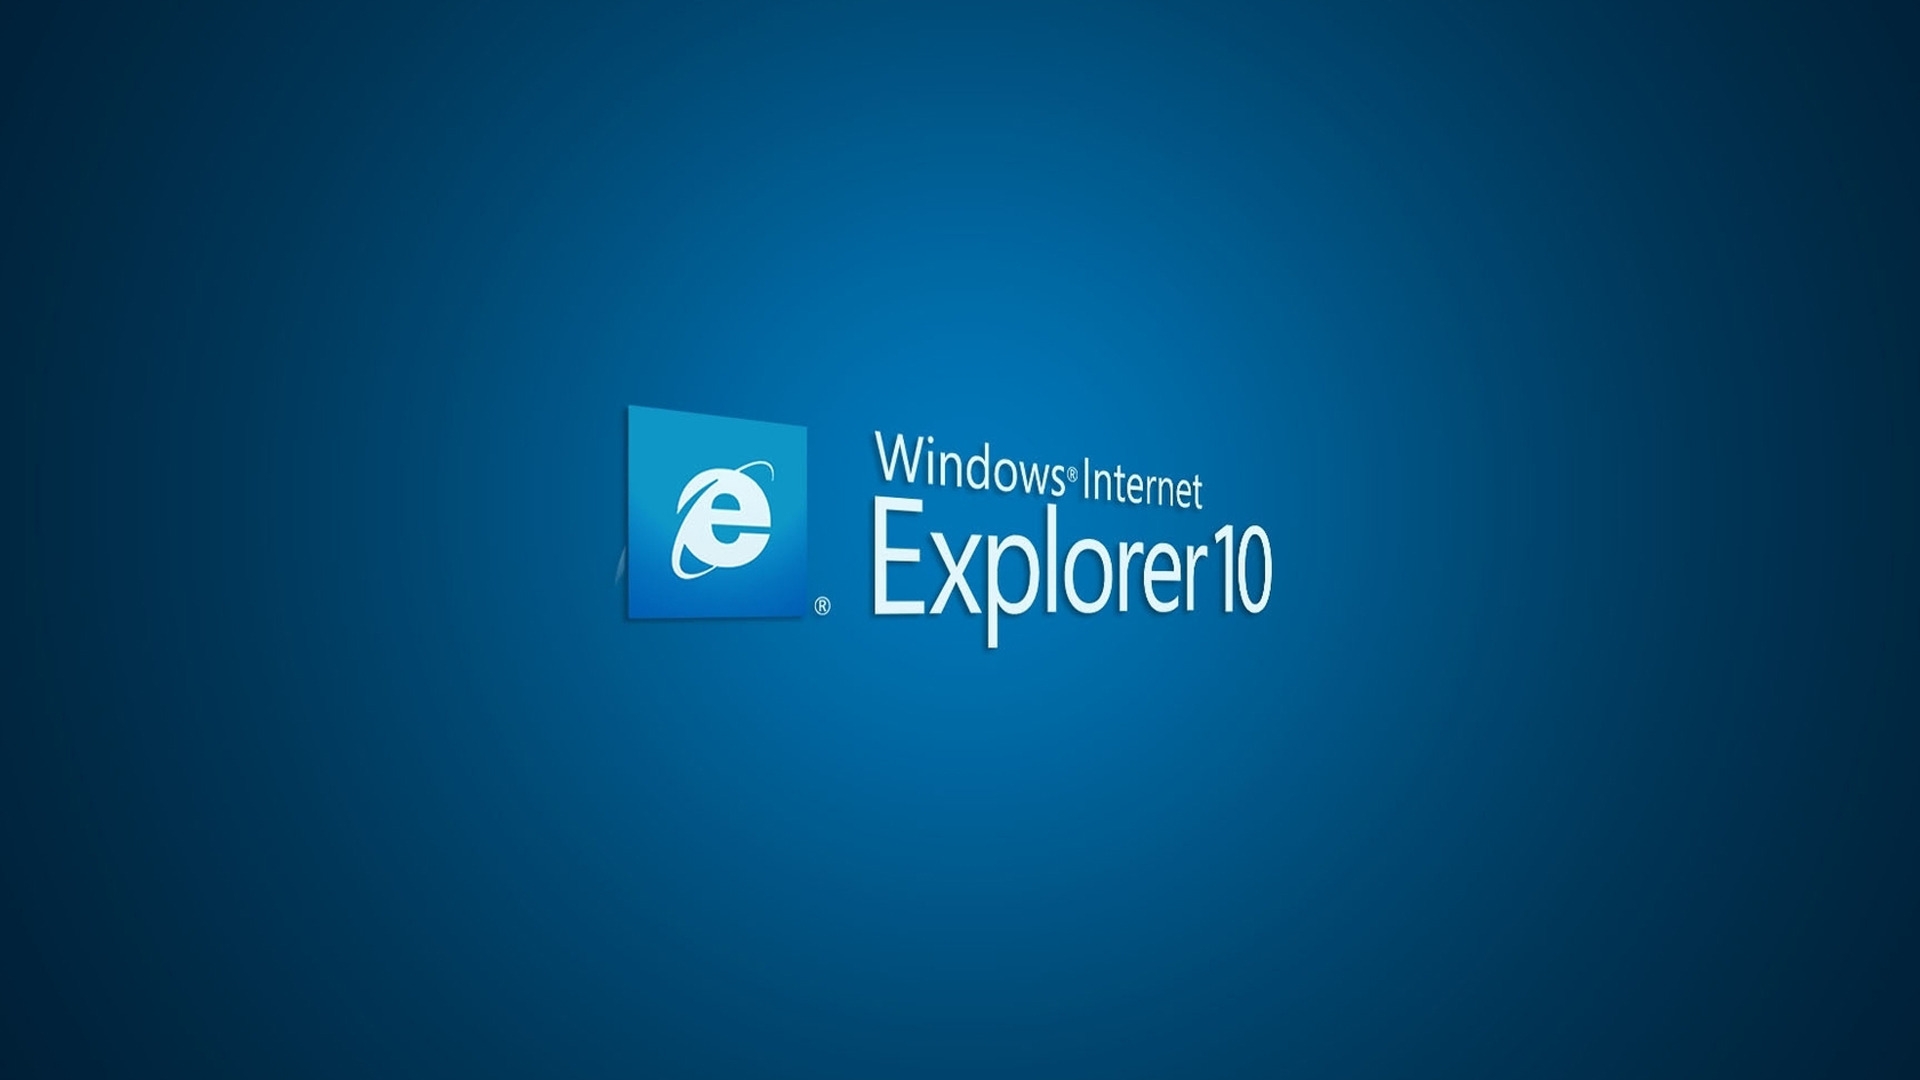 Internet Explorer 10 for 1920 x 1080 HDTV 1080p resolution